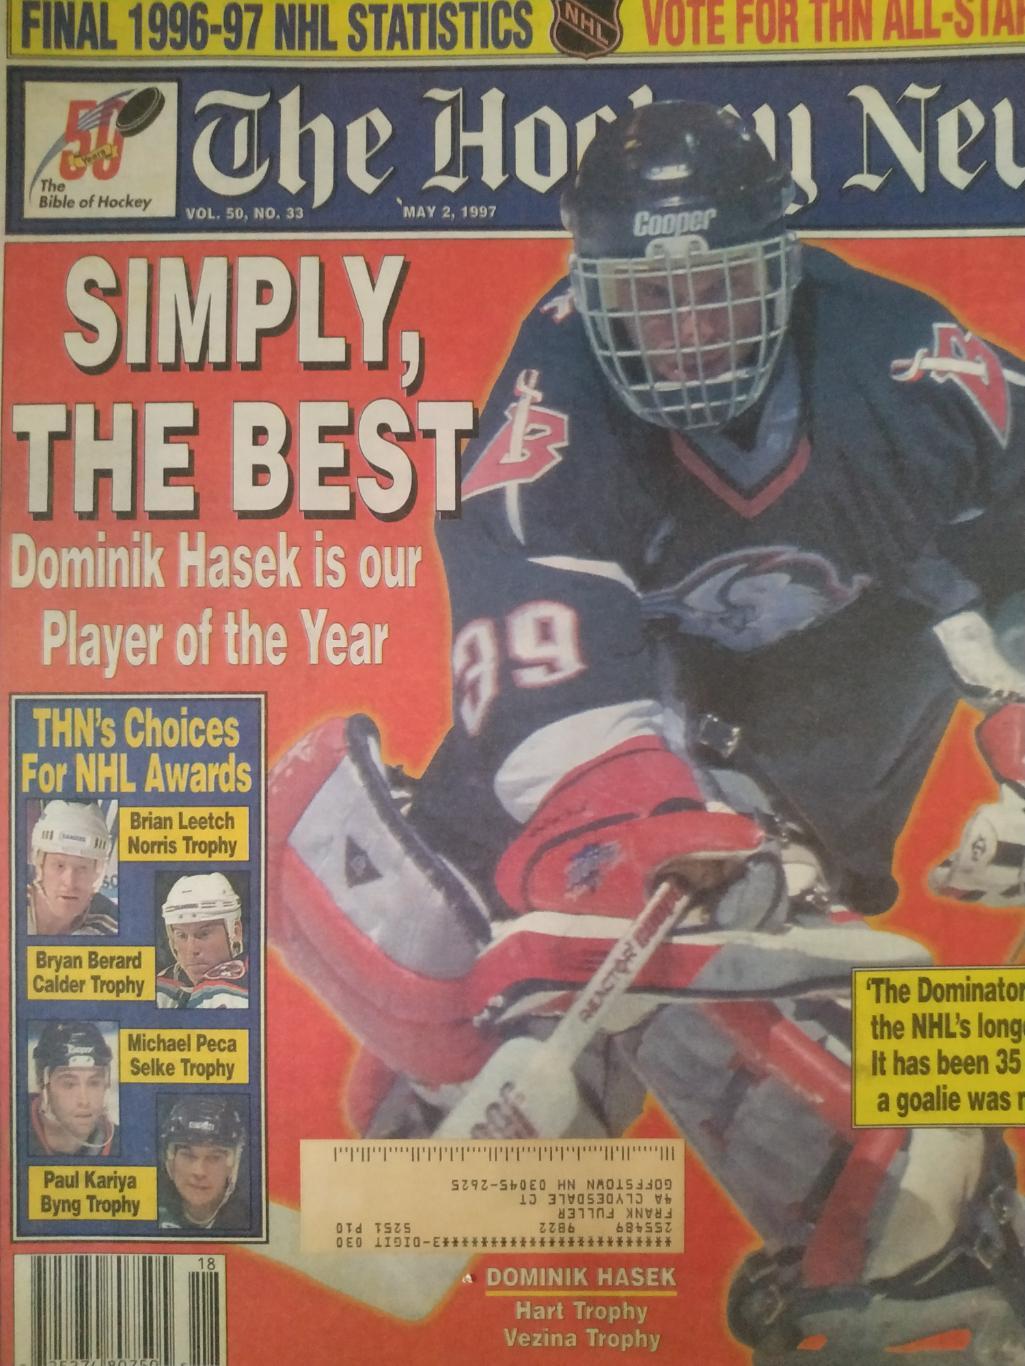 ХОККЕЙ ЖУРНАЛ ЕЖЕНЕДЕЛЬНИК НХЛ НОВОСТИ ХОККЕЯ NHL MAY.2 1997 THE HOCKEY NEWS